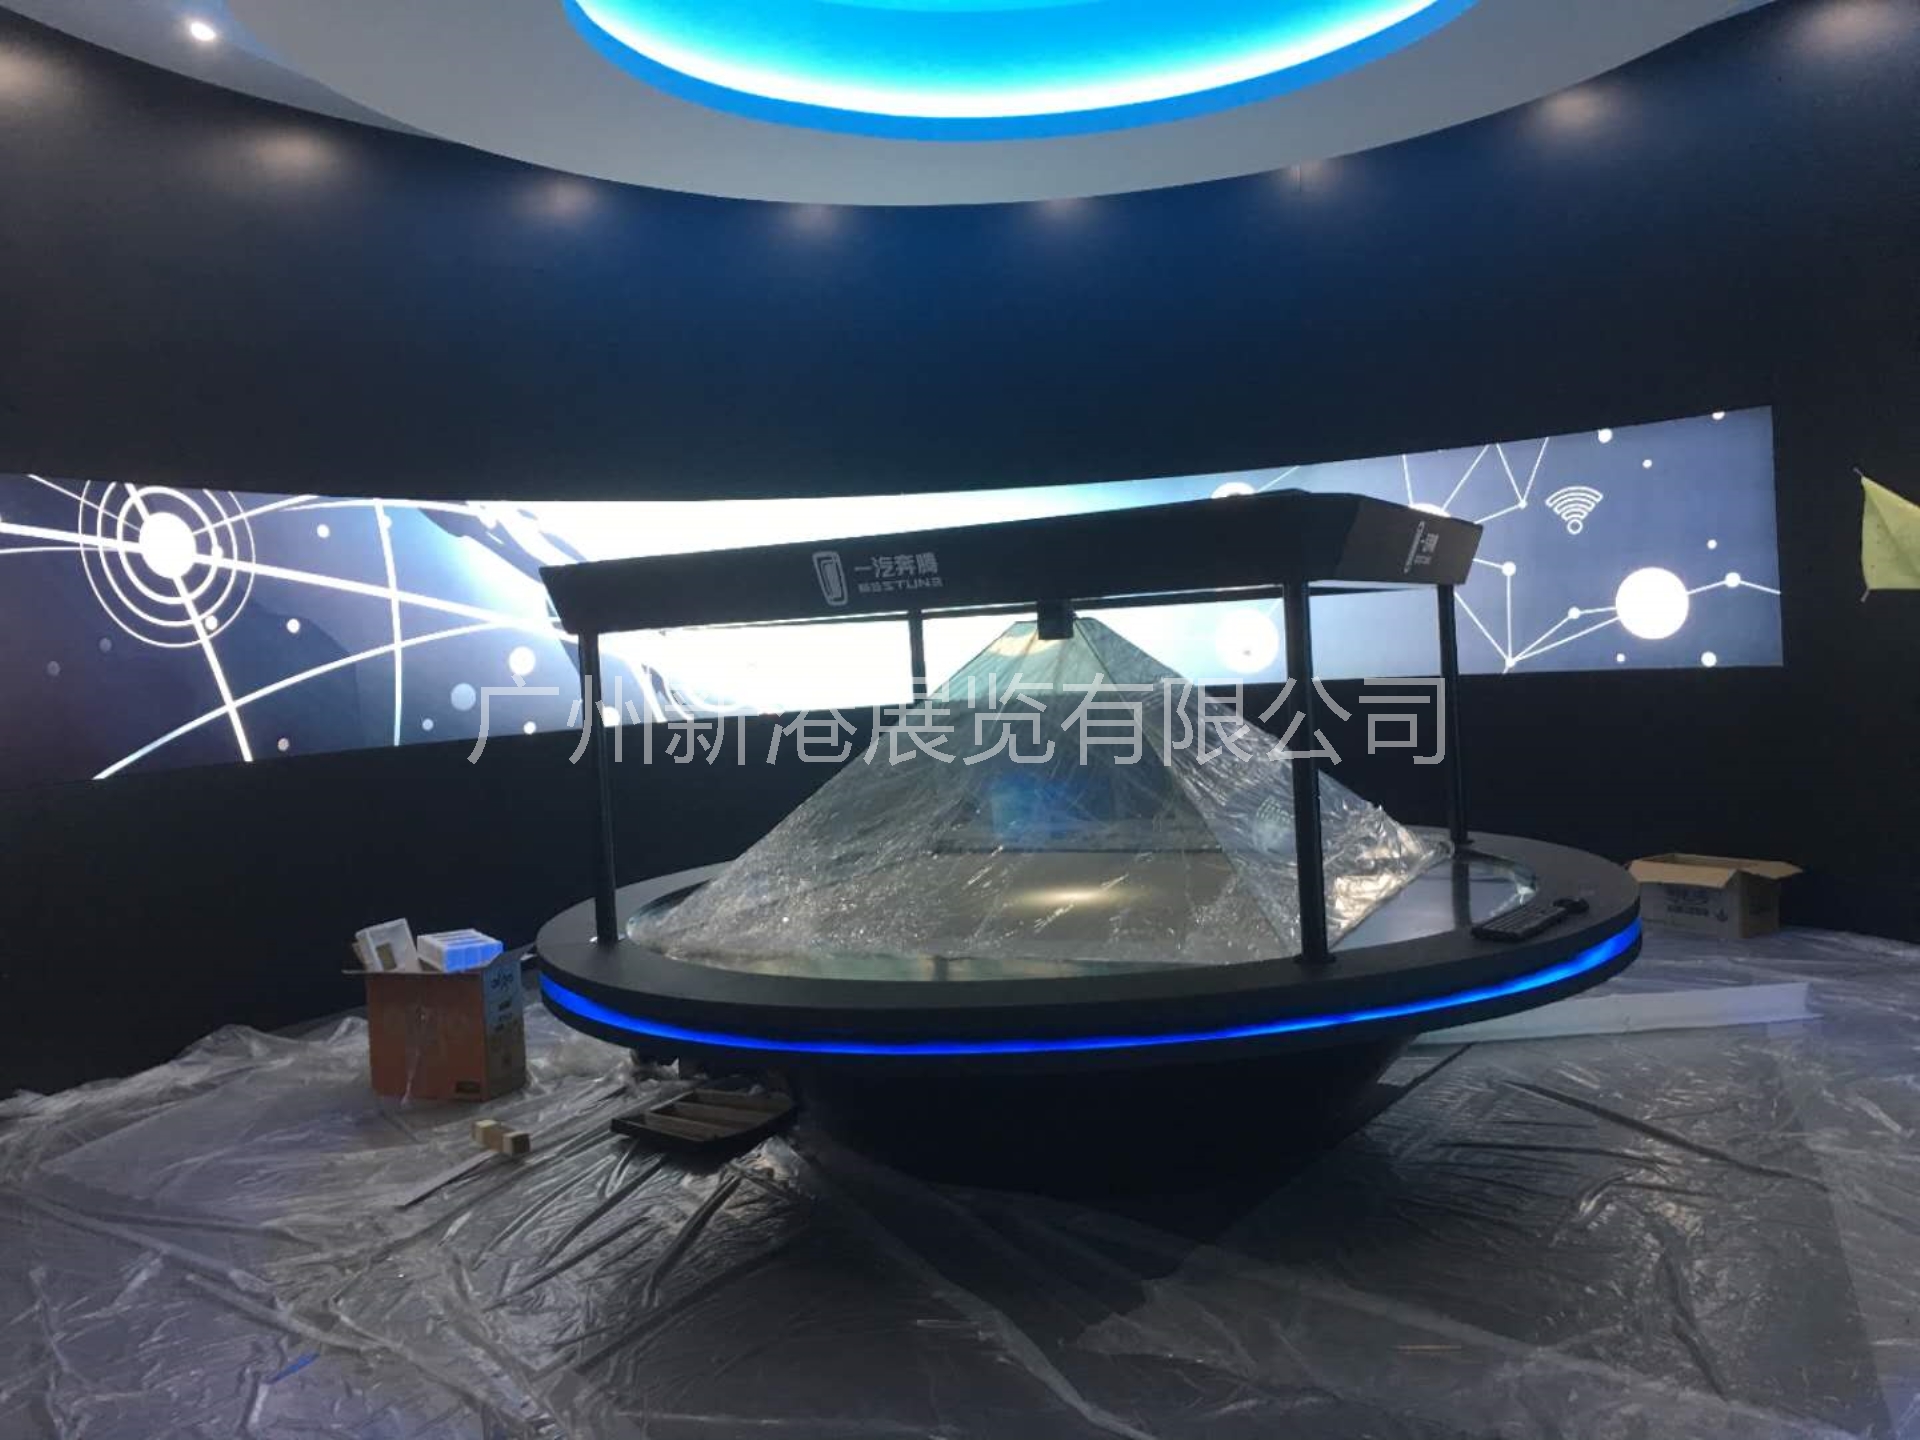 2019年上海车展一汽奔腾展台互动设备